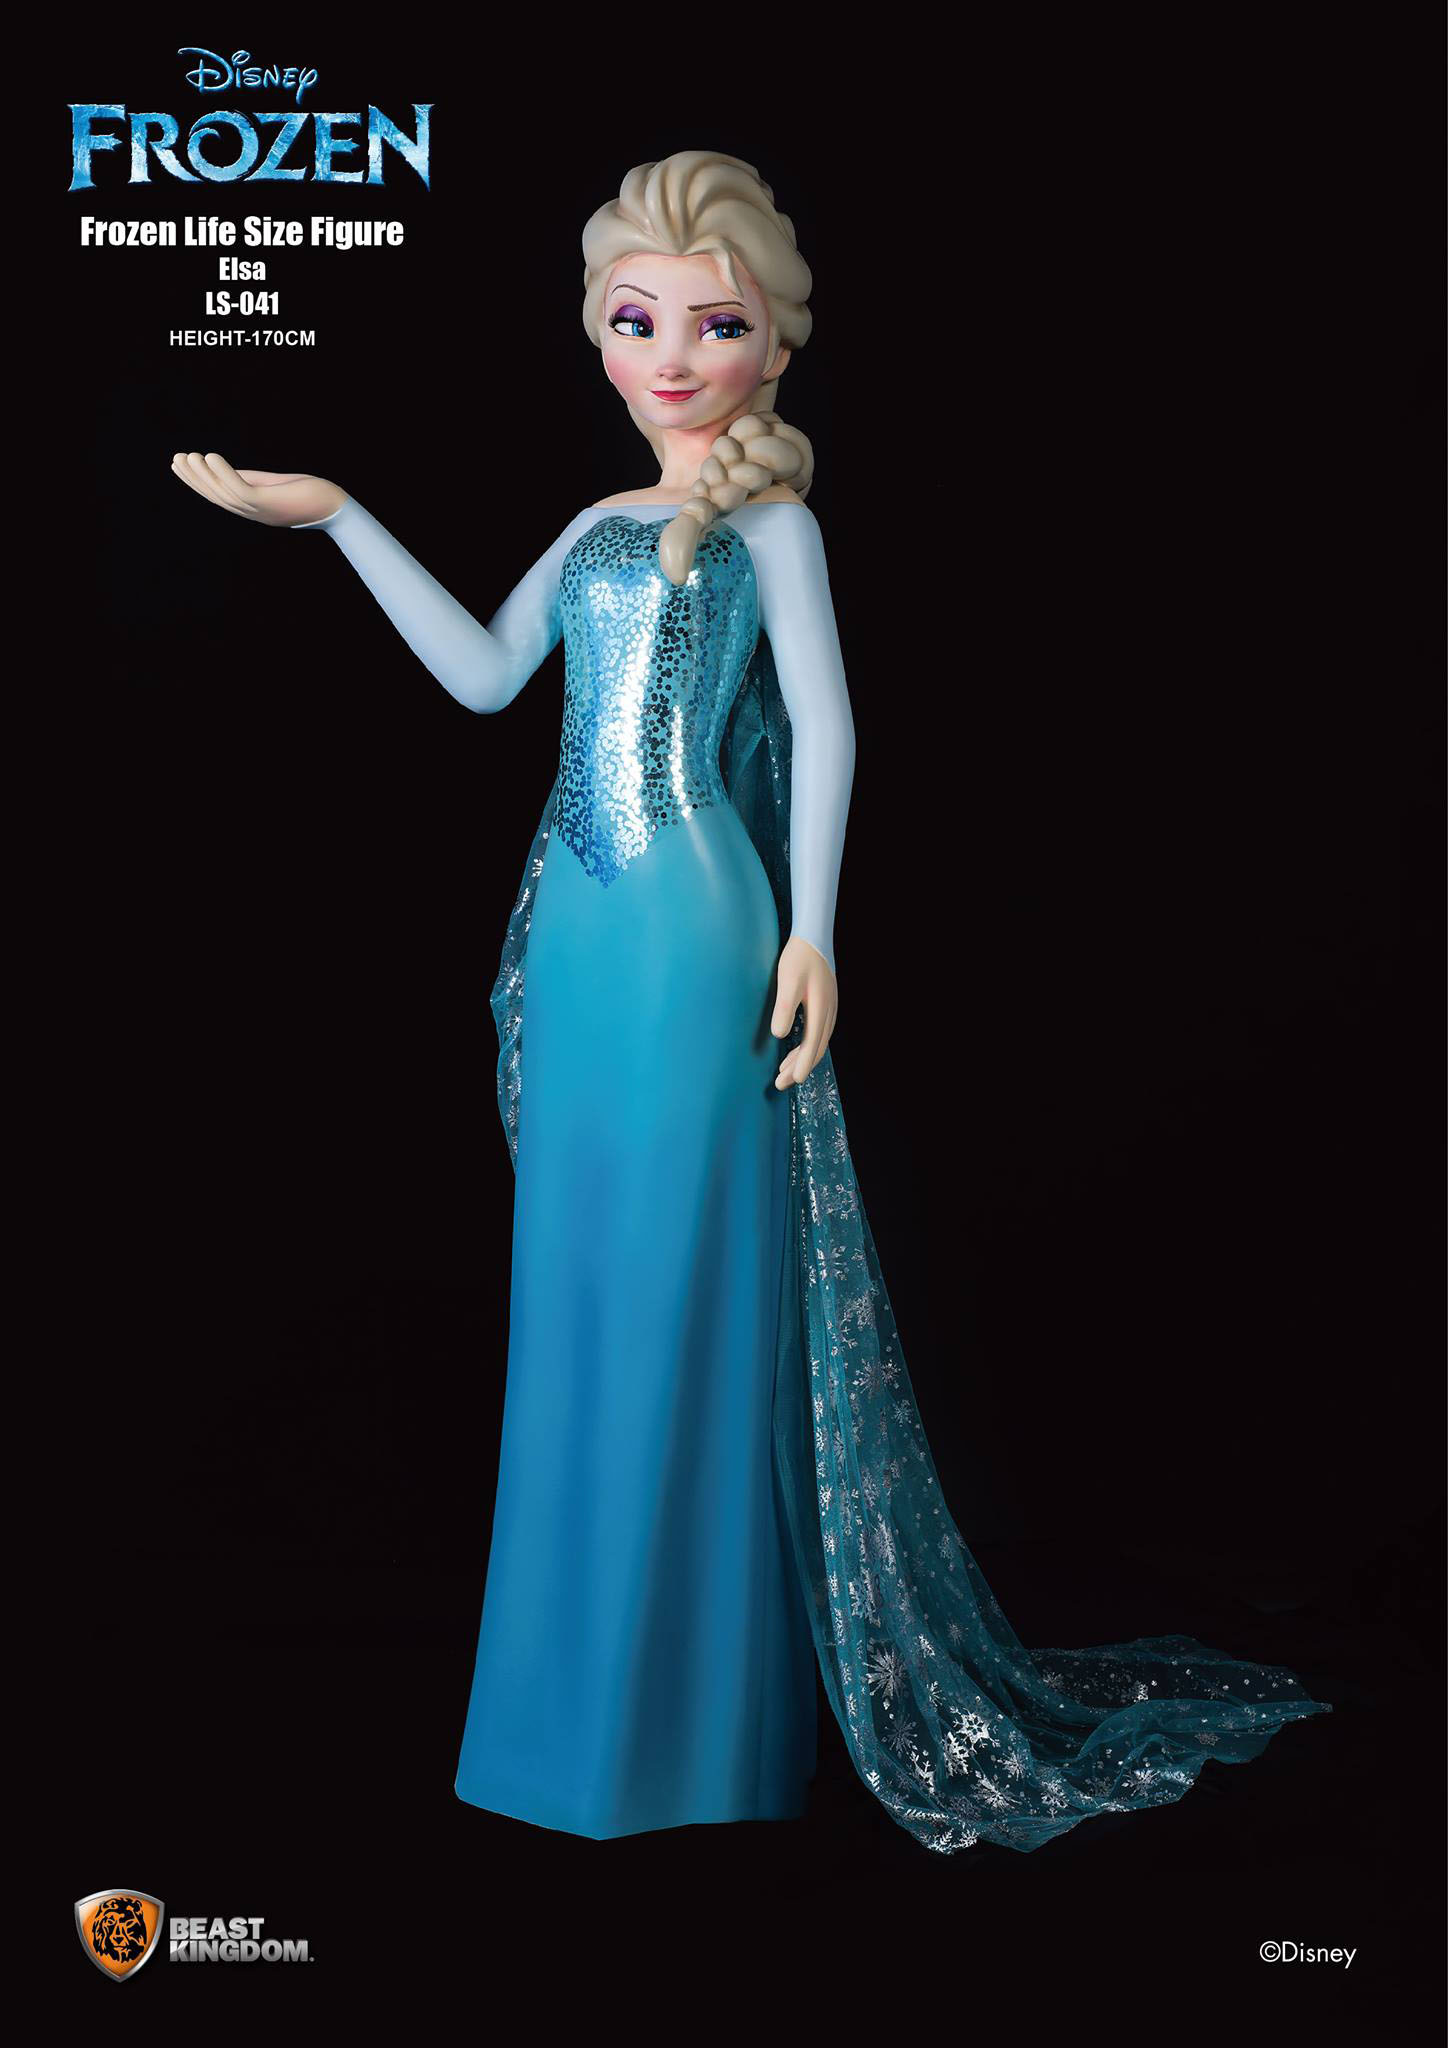 Figurines Reine des Neiges - Lot - Stock Limité – Le Royaume des Neiges